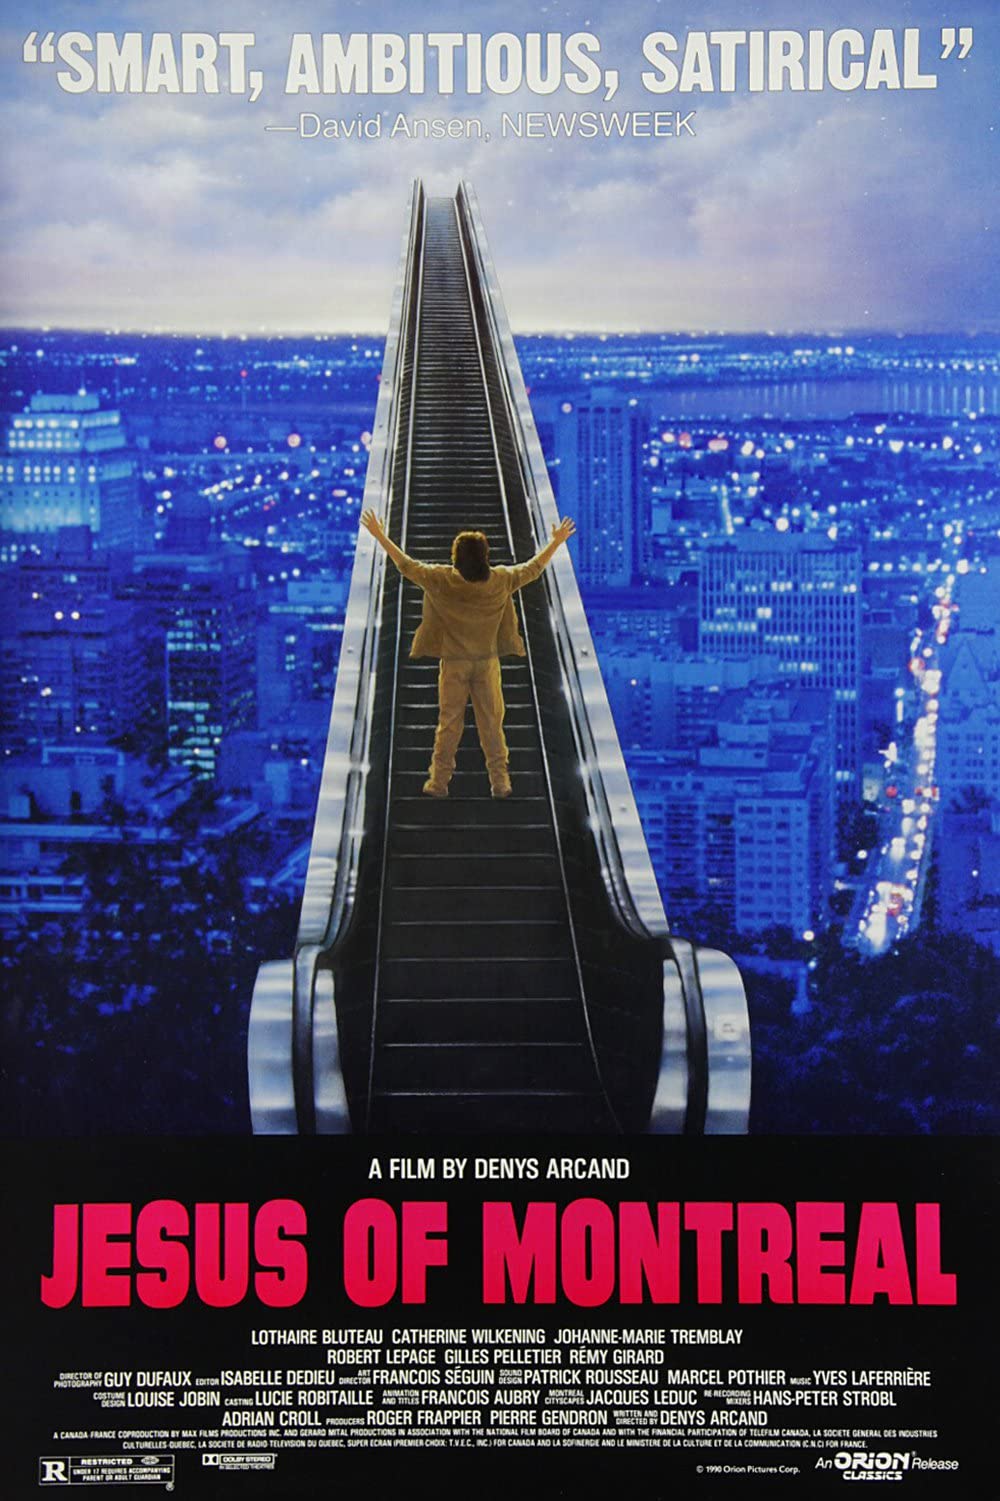 Filmbeschreibung zu Jésus de Montréal